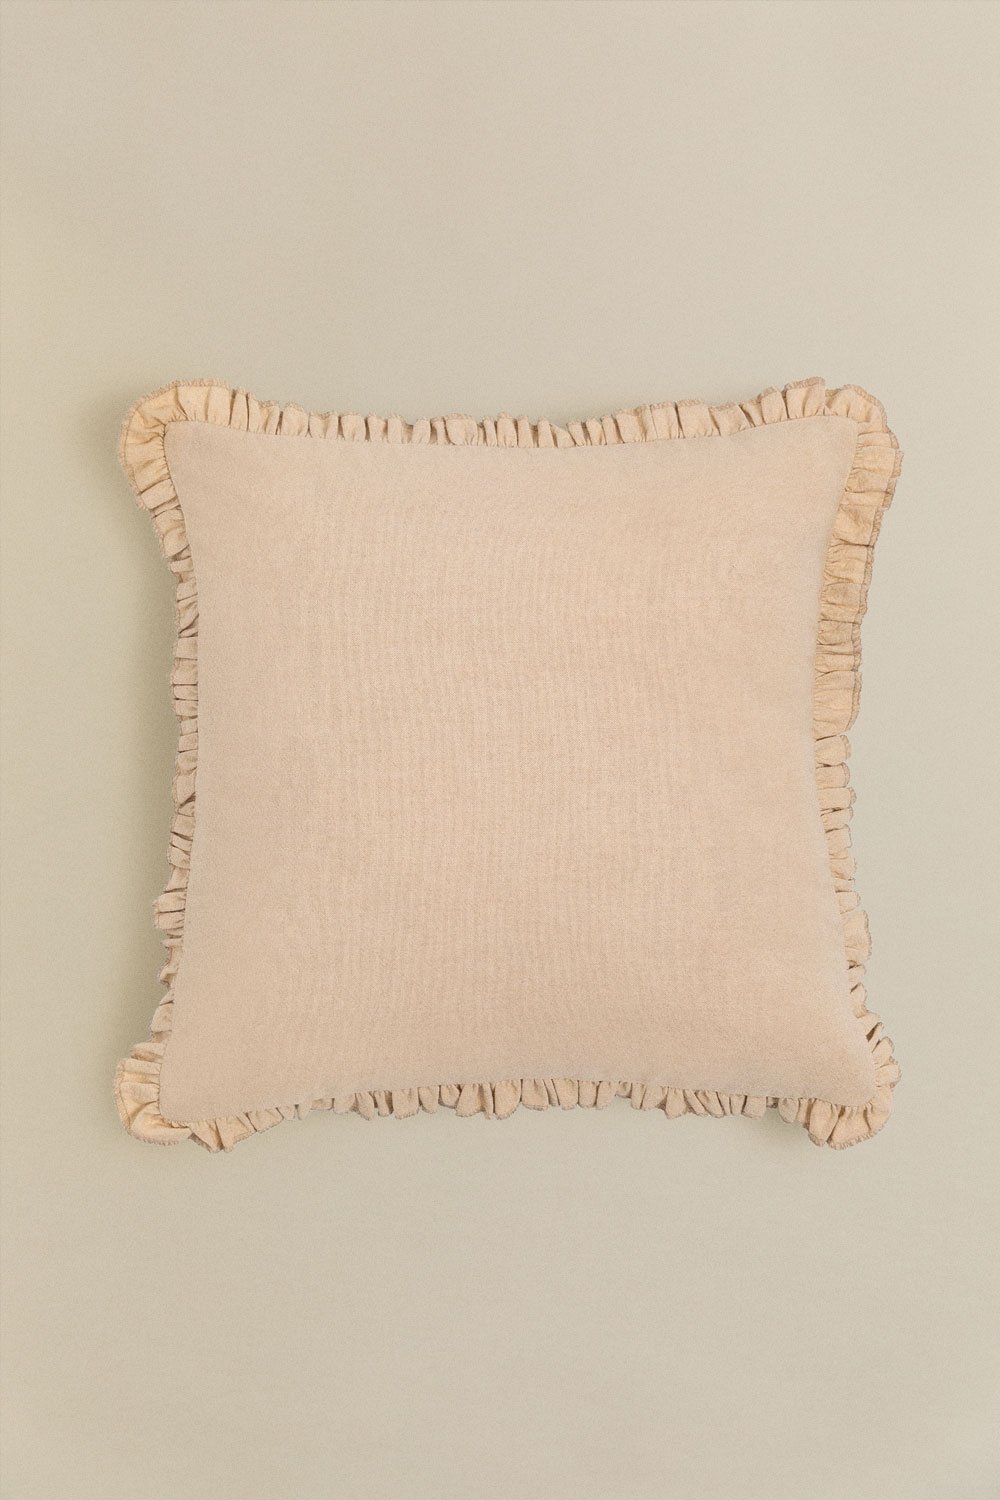 Cuscino quadrato in cotone (40x40 cm) Arassu, immagine della galleria 1